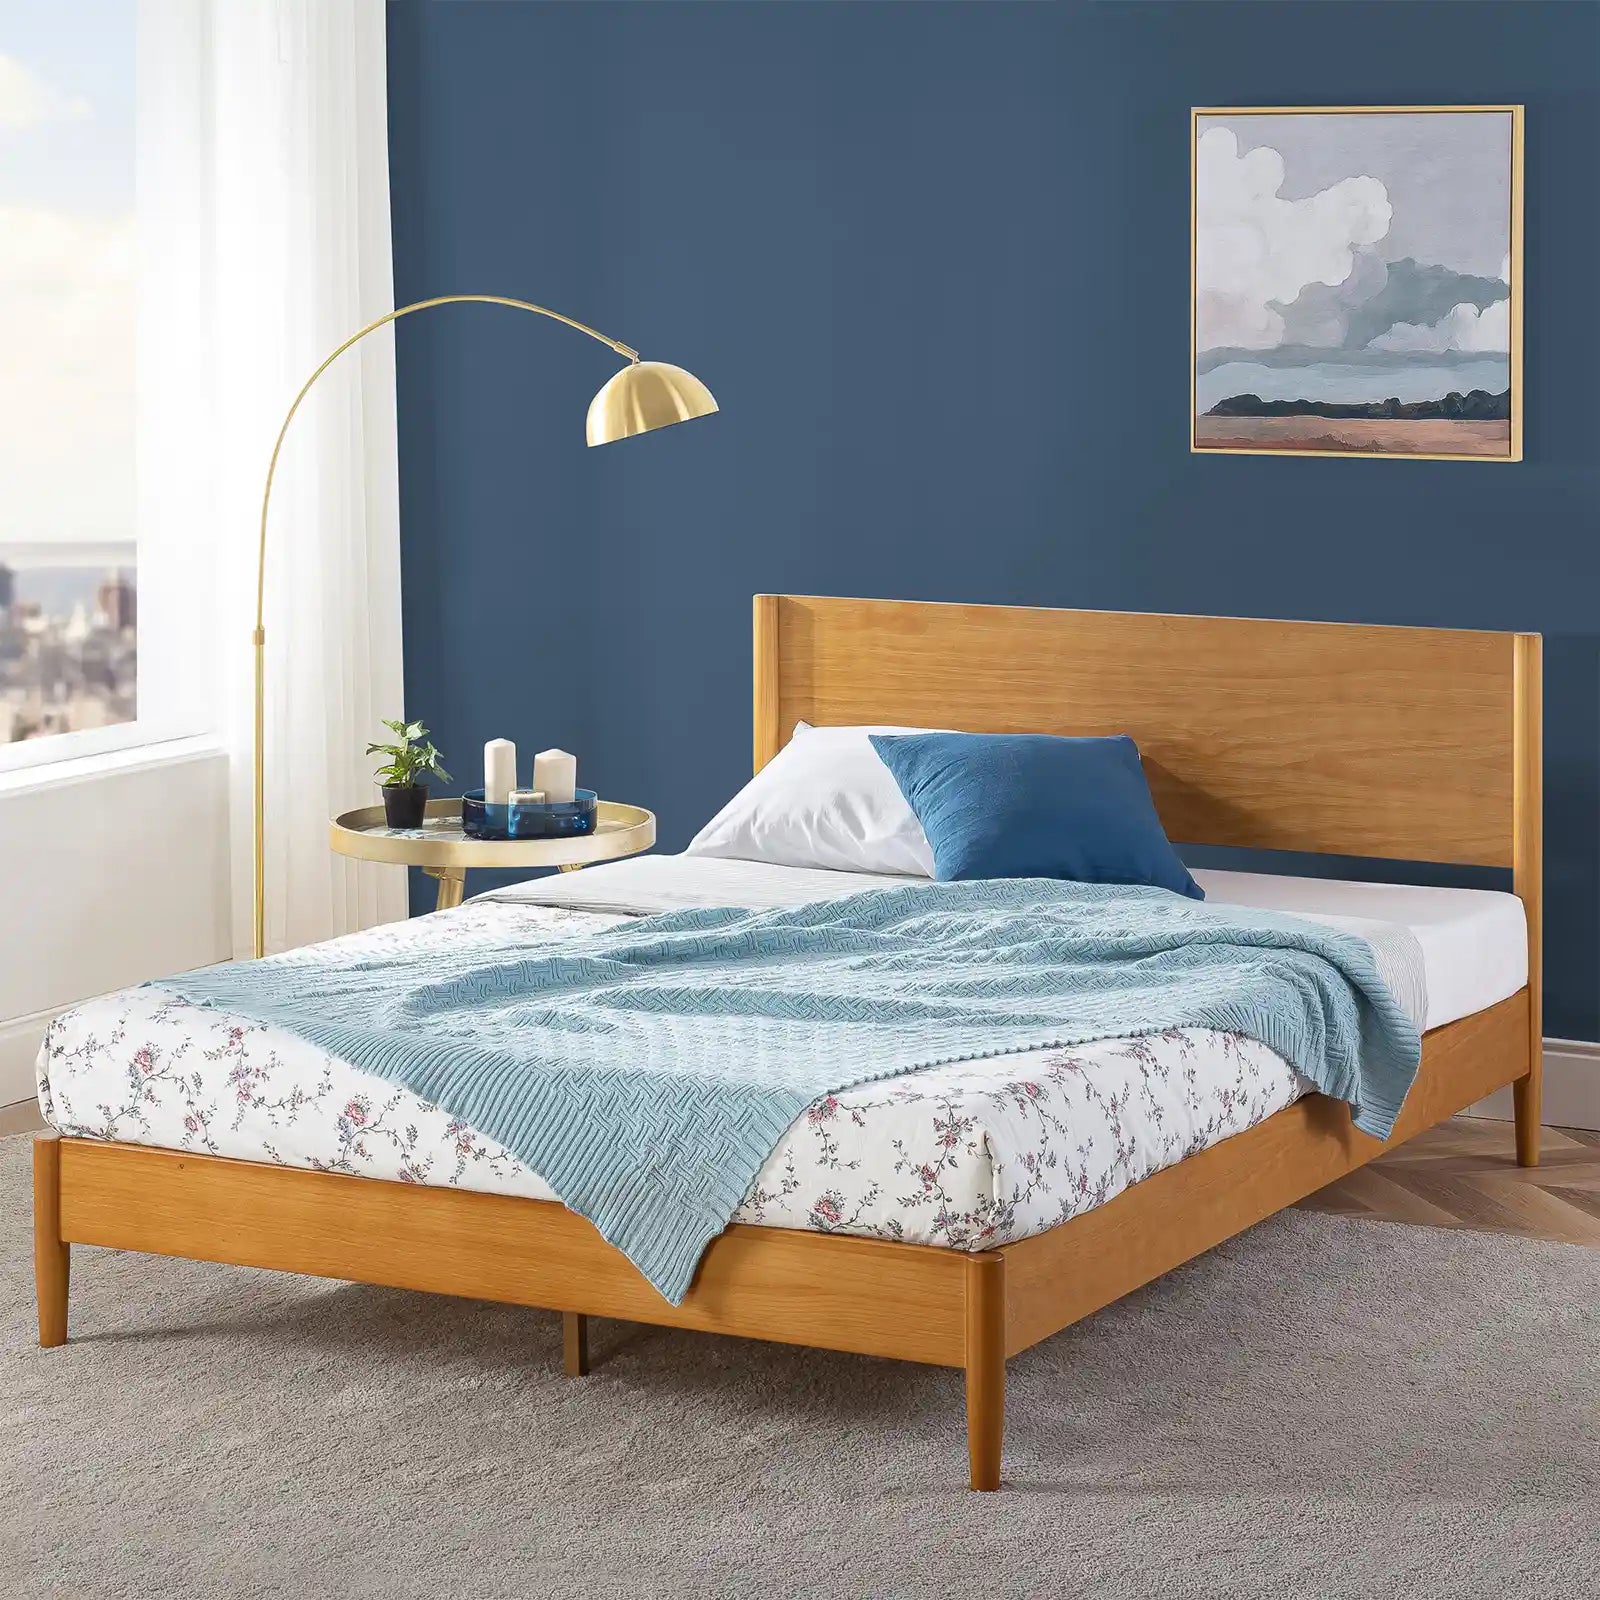 Marco de cama con plataforma de madera de mediados de siglo con un diseño clásico